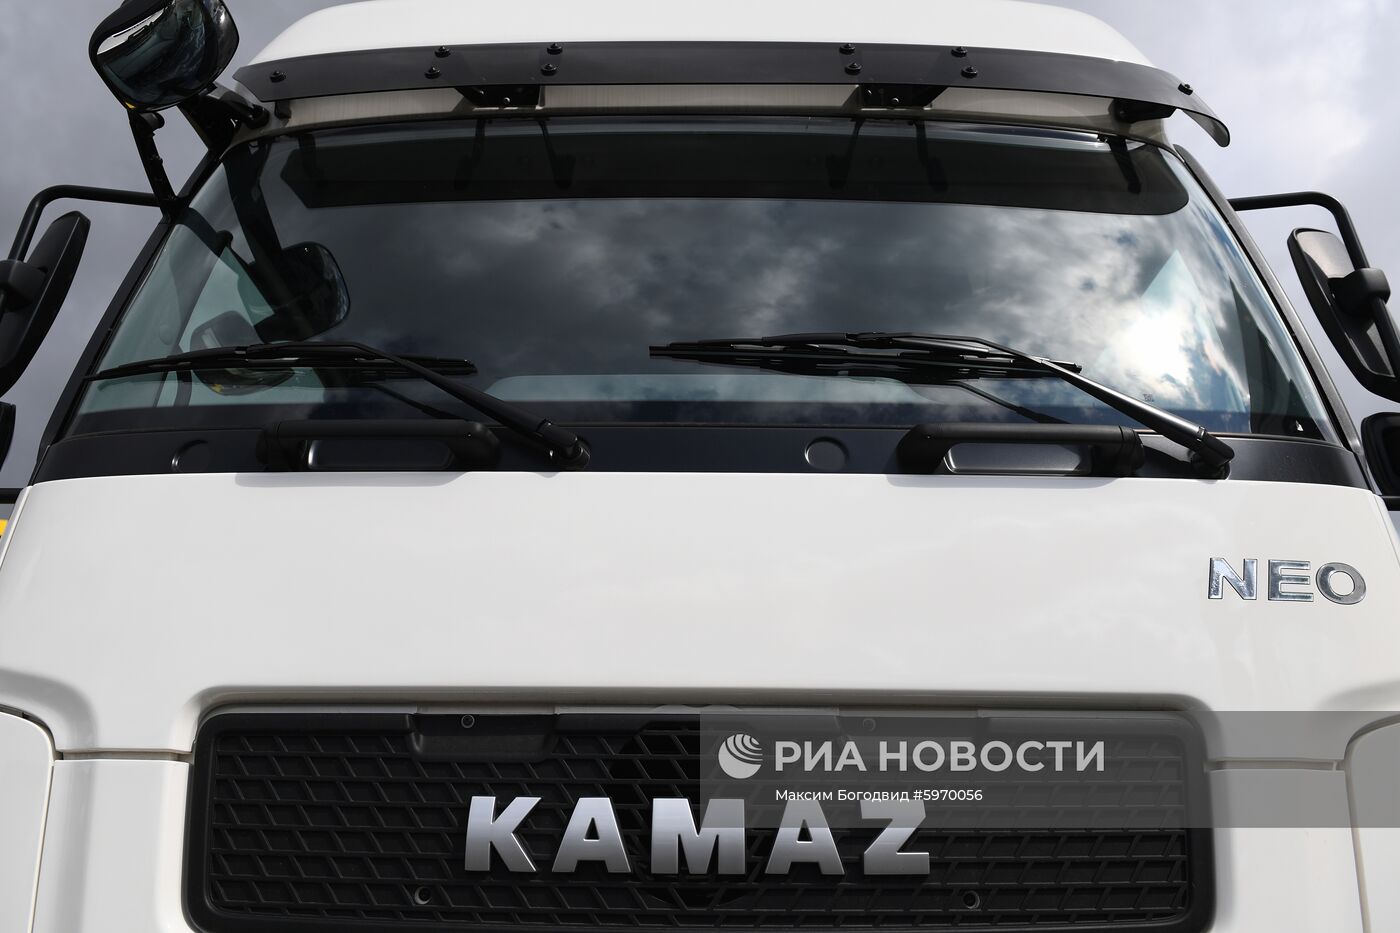 Автомобильный завод "КамАЗ" в Татарстане